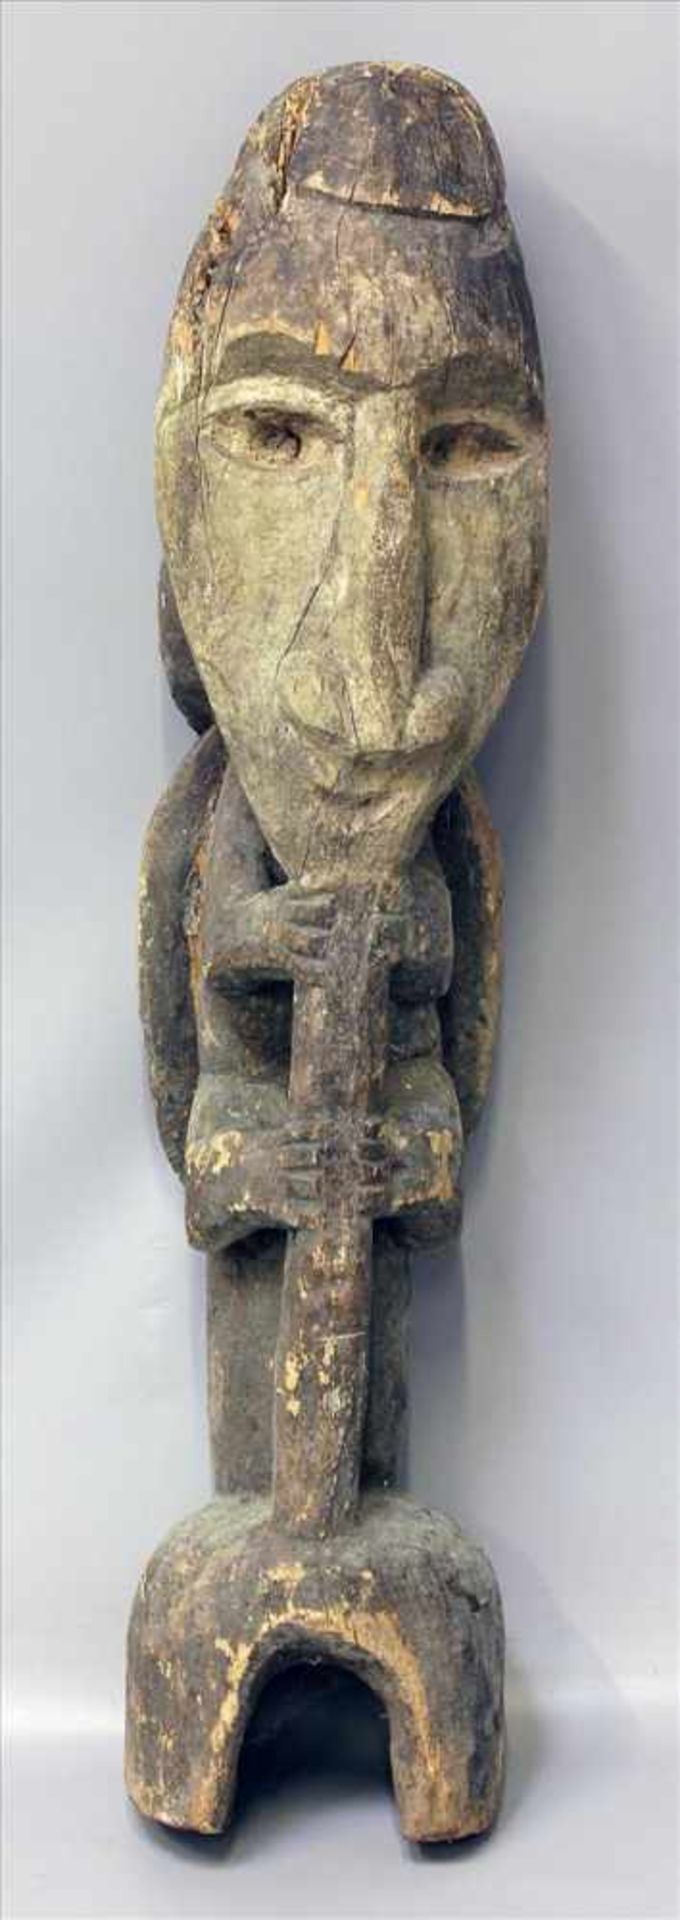 Große afrikanische Skulptur.Tier mit großer Maske. Holz, vollplastisch geschnitzt und